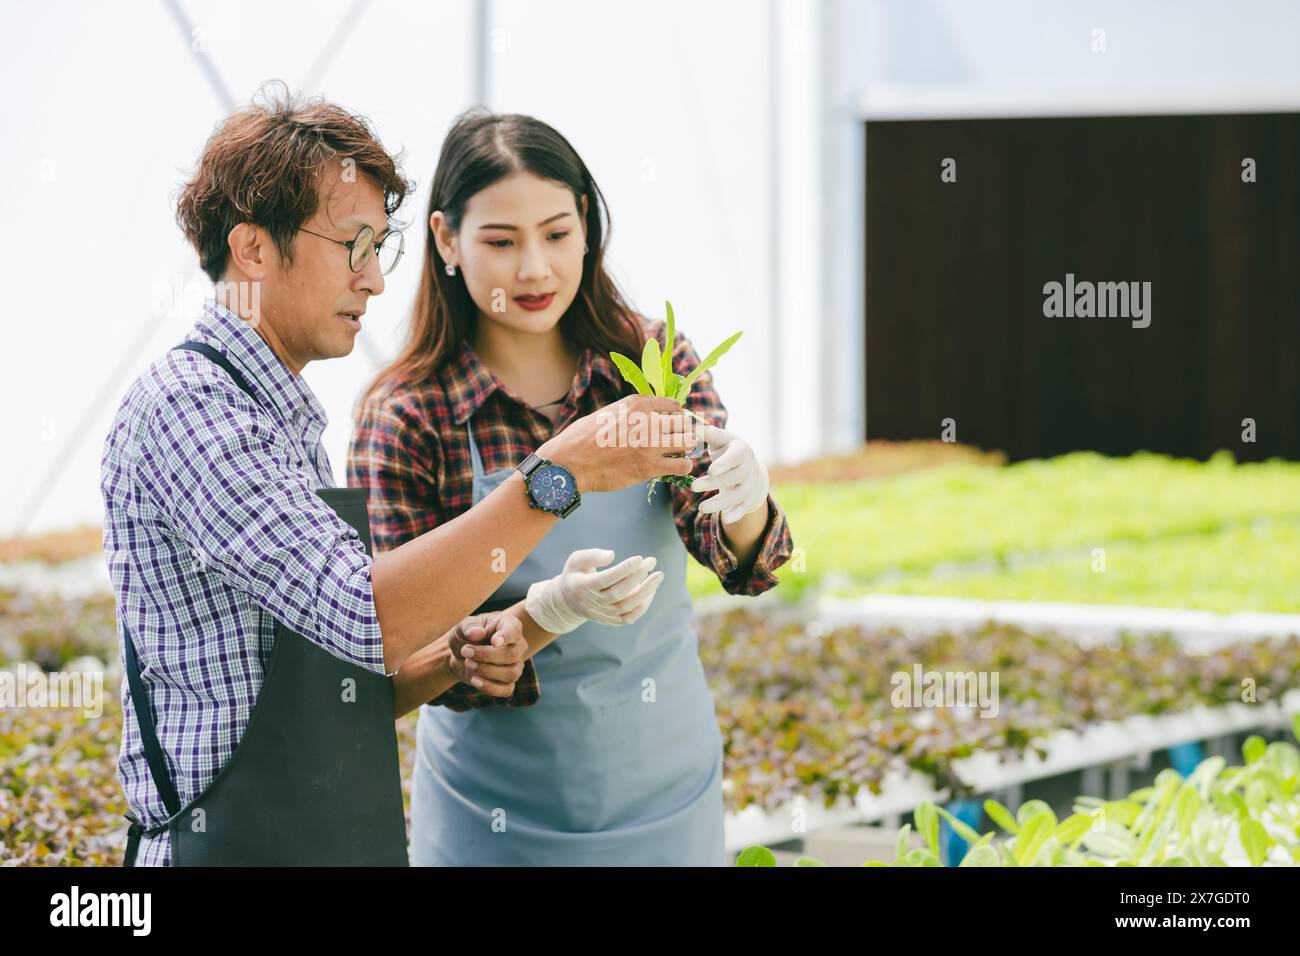 un agricoltore felice ha coltivato una pianta di alimenti freschi e verdi in hydro farm, un moderno concetto di business dell'agricoltura ecologica pulita Foto Stock